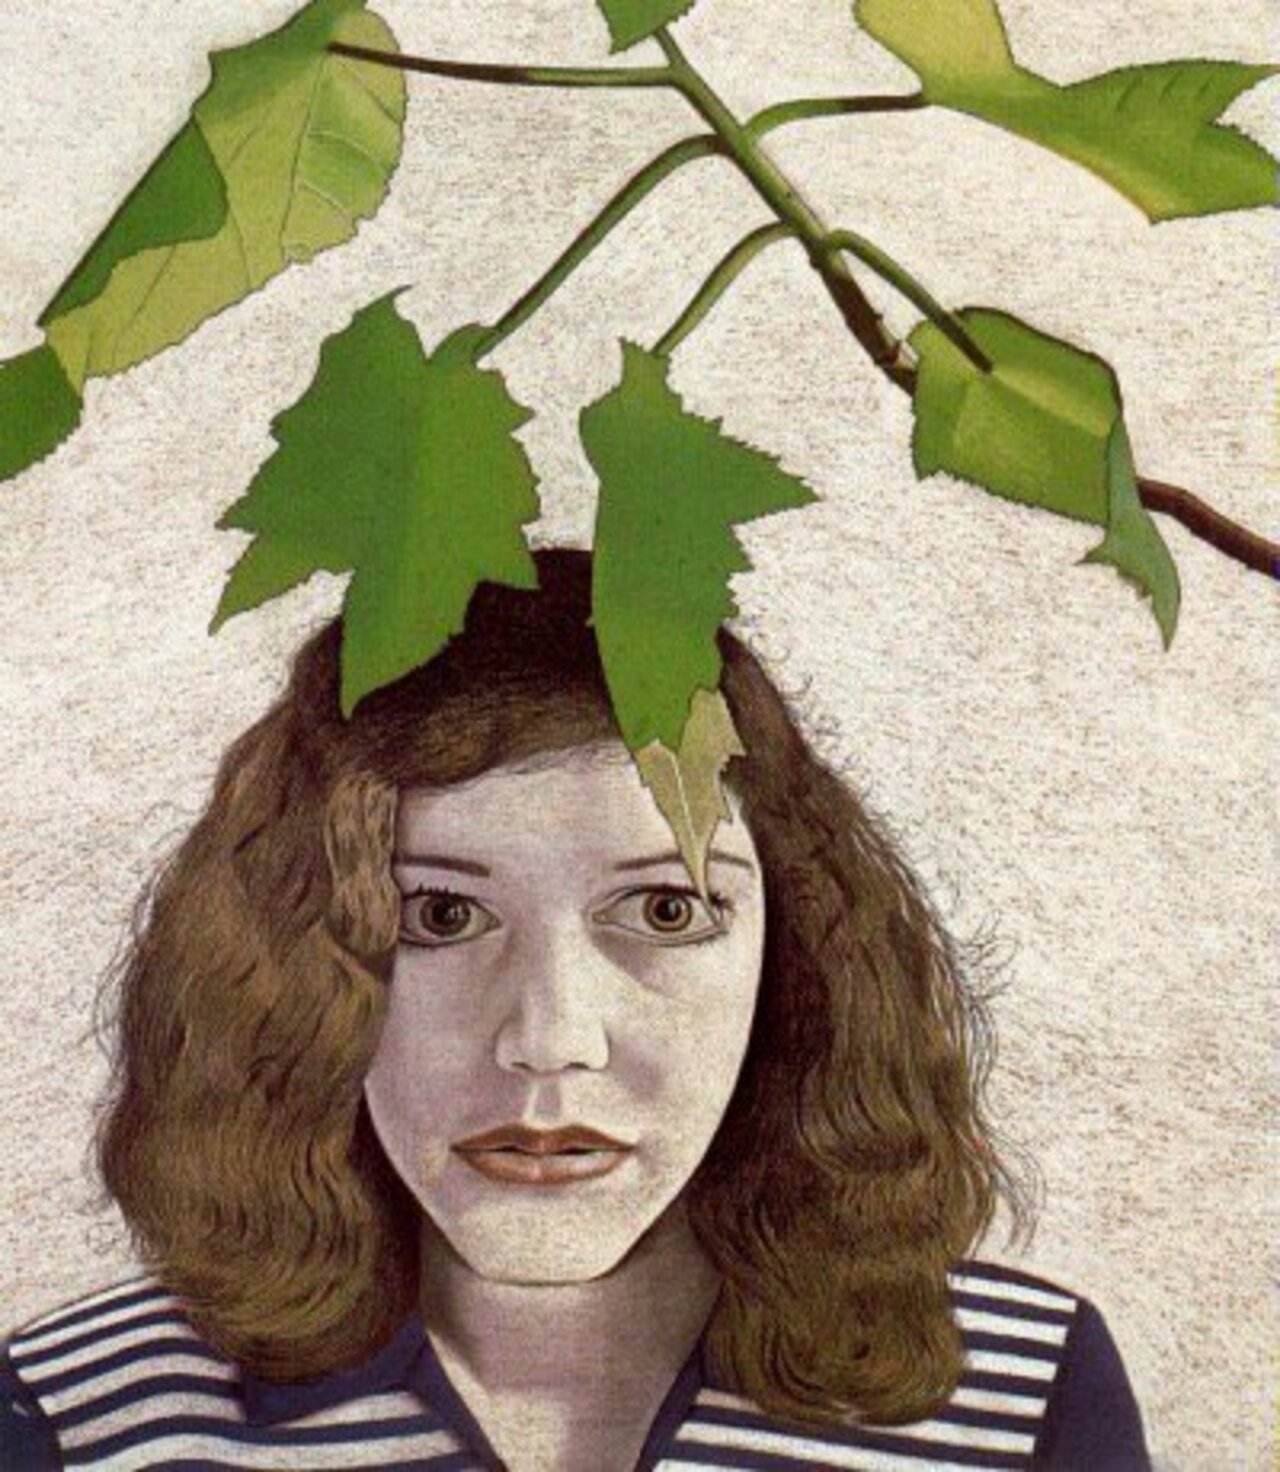 Muchacha con hojas - Lucien Freud #art https://t.co/4KmmBDZlwV